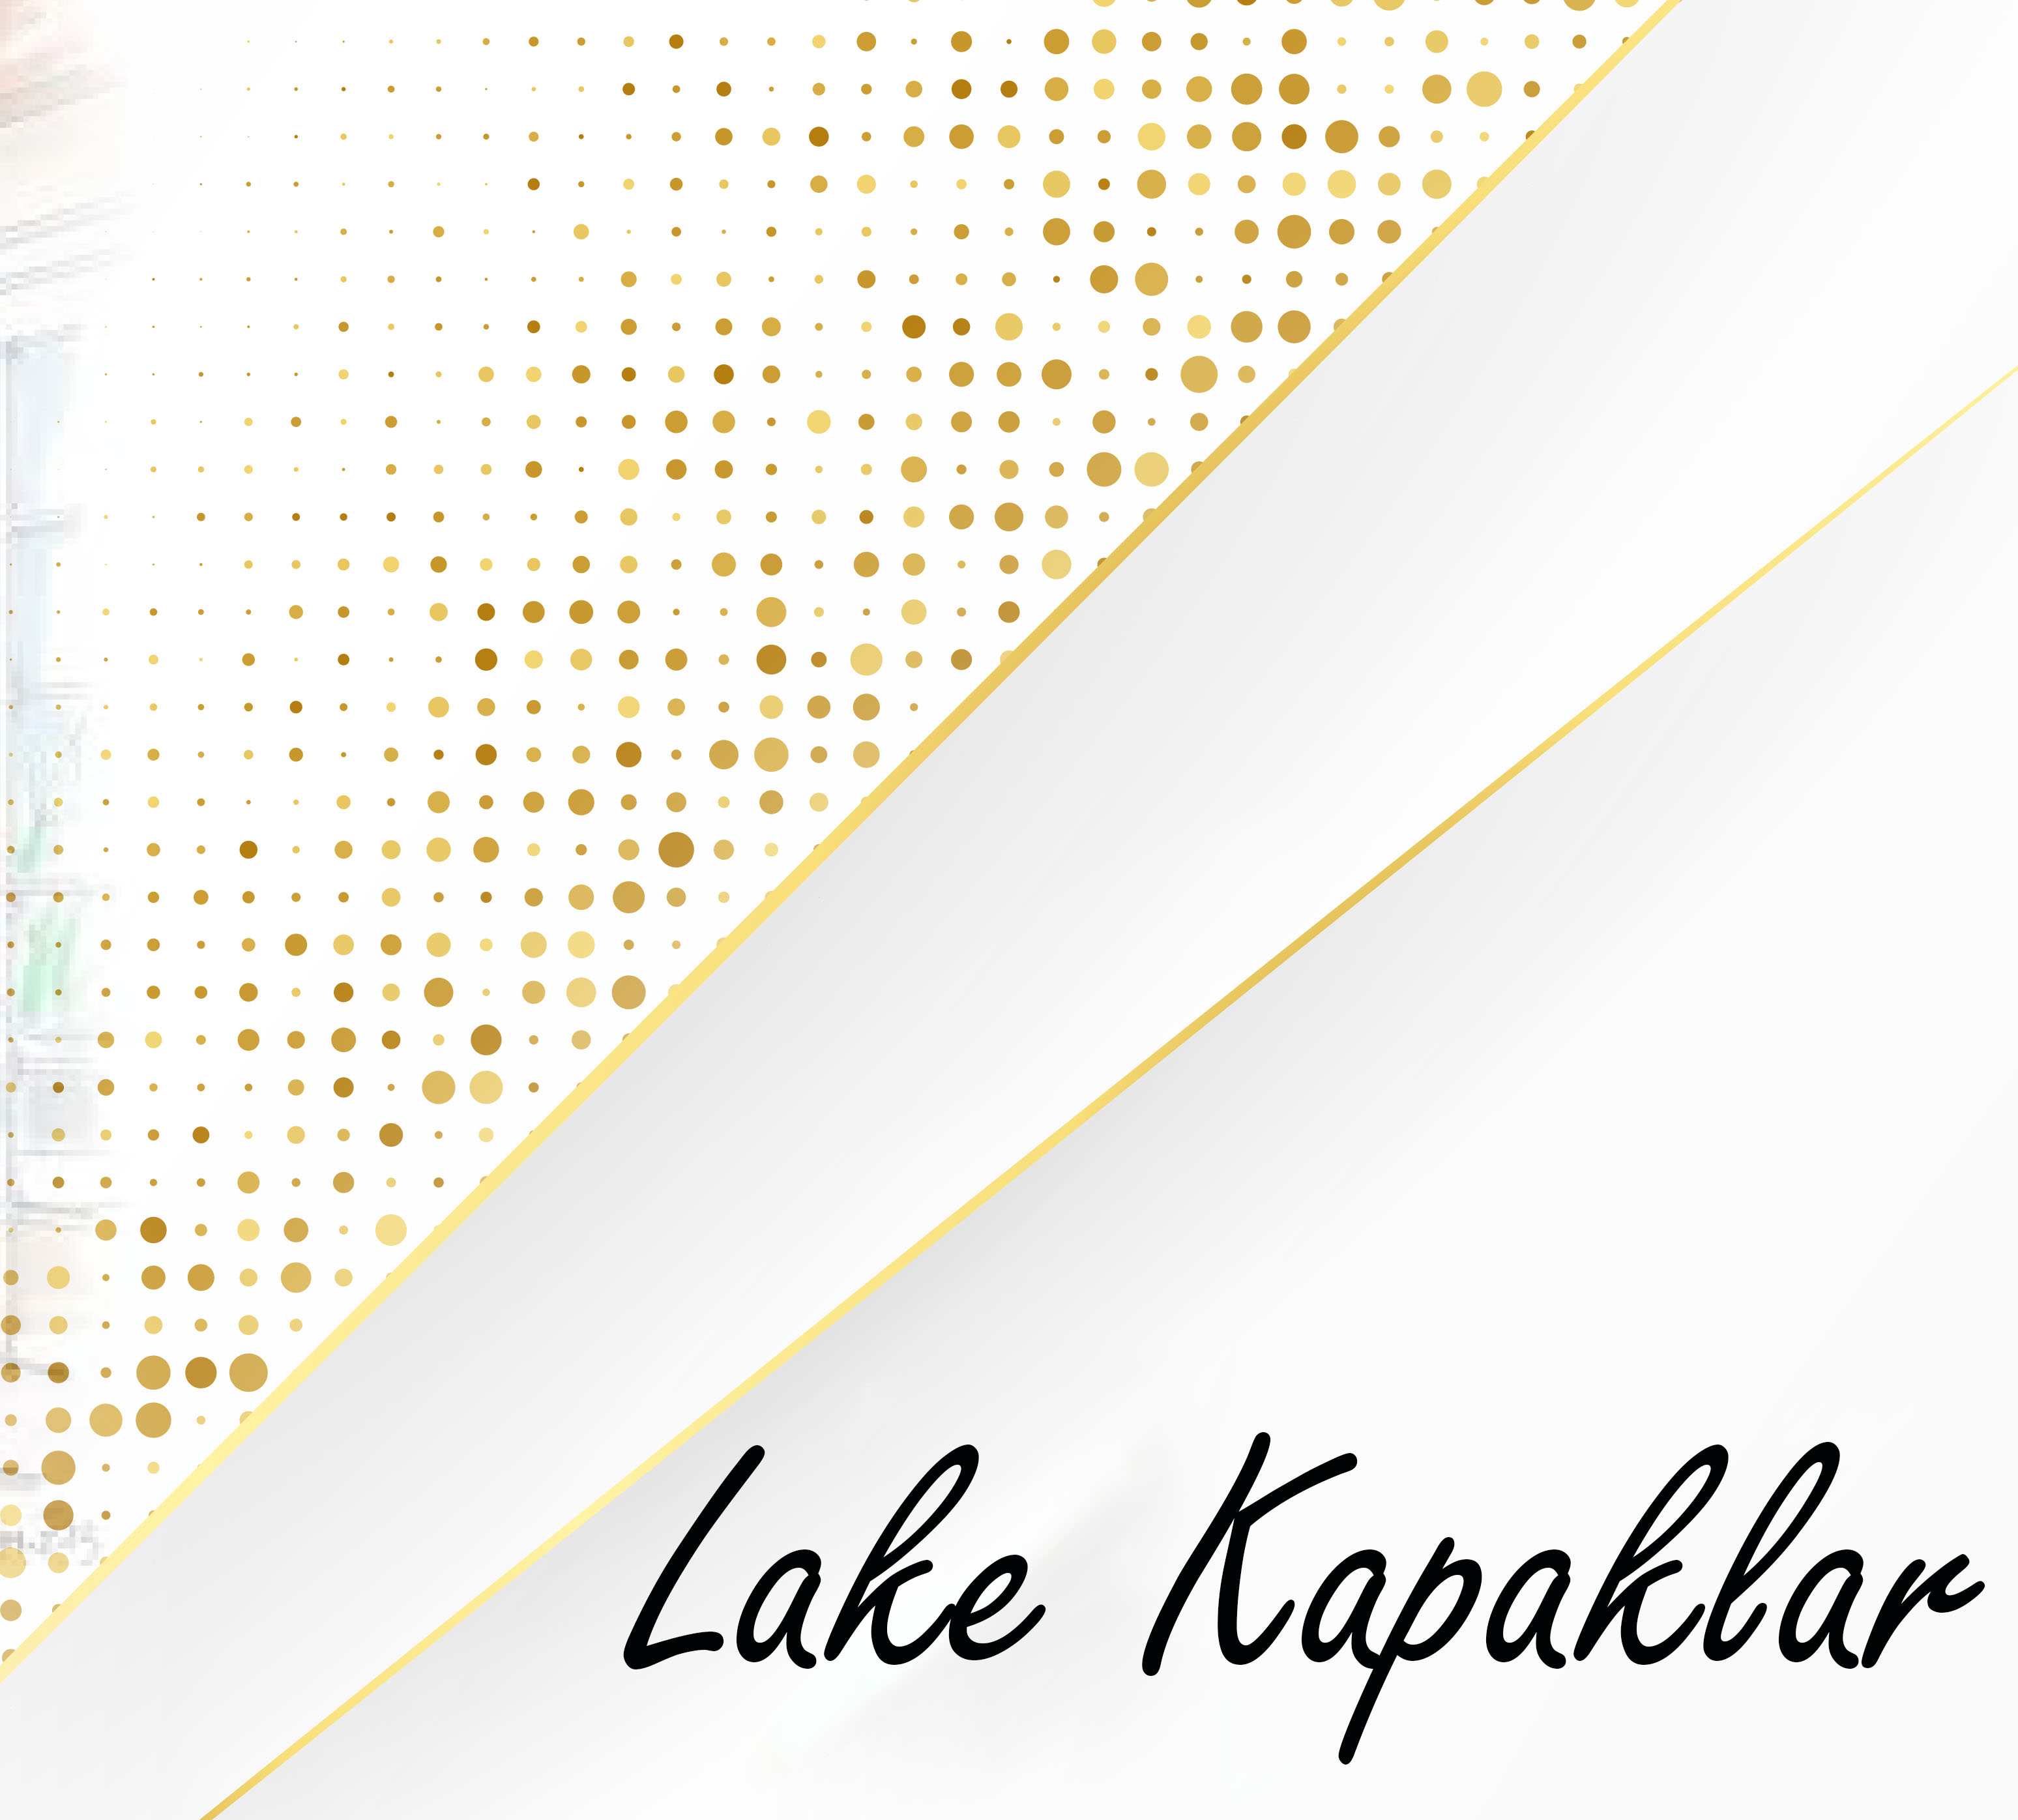 Lake Kapaklar